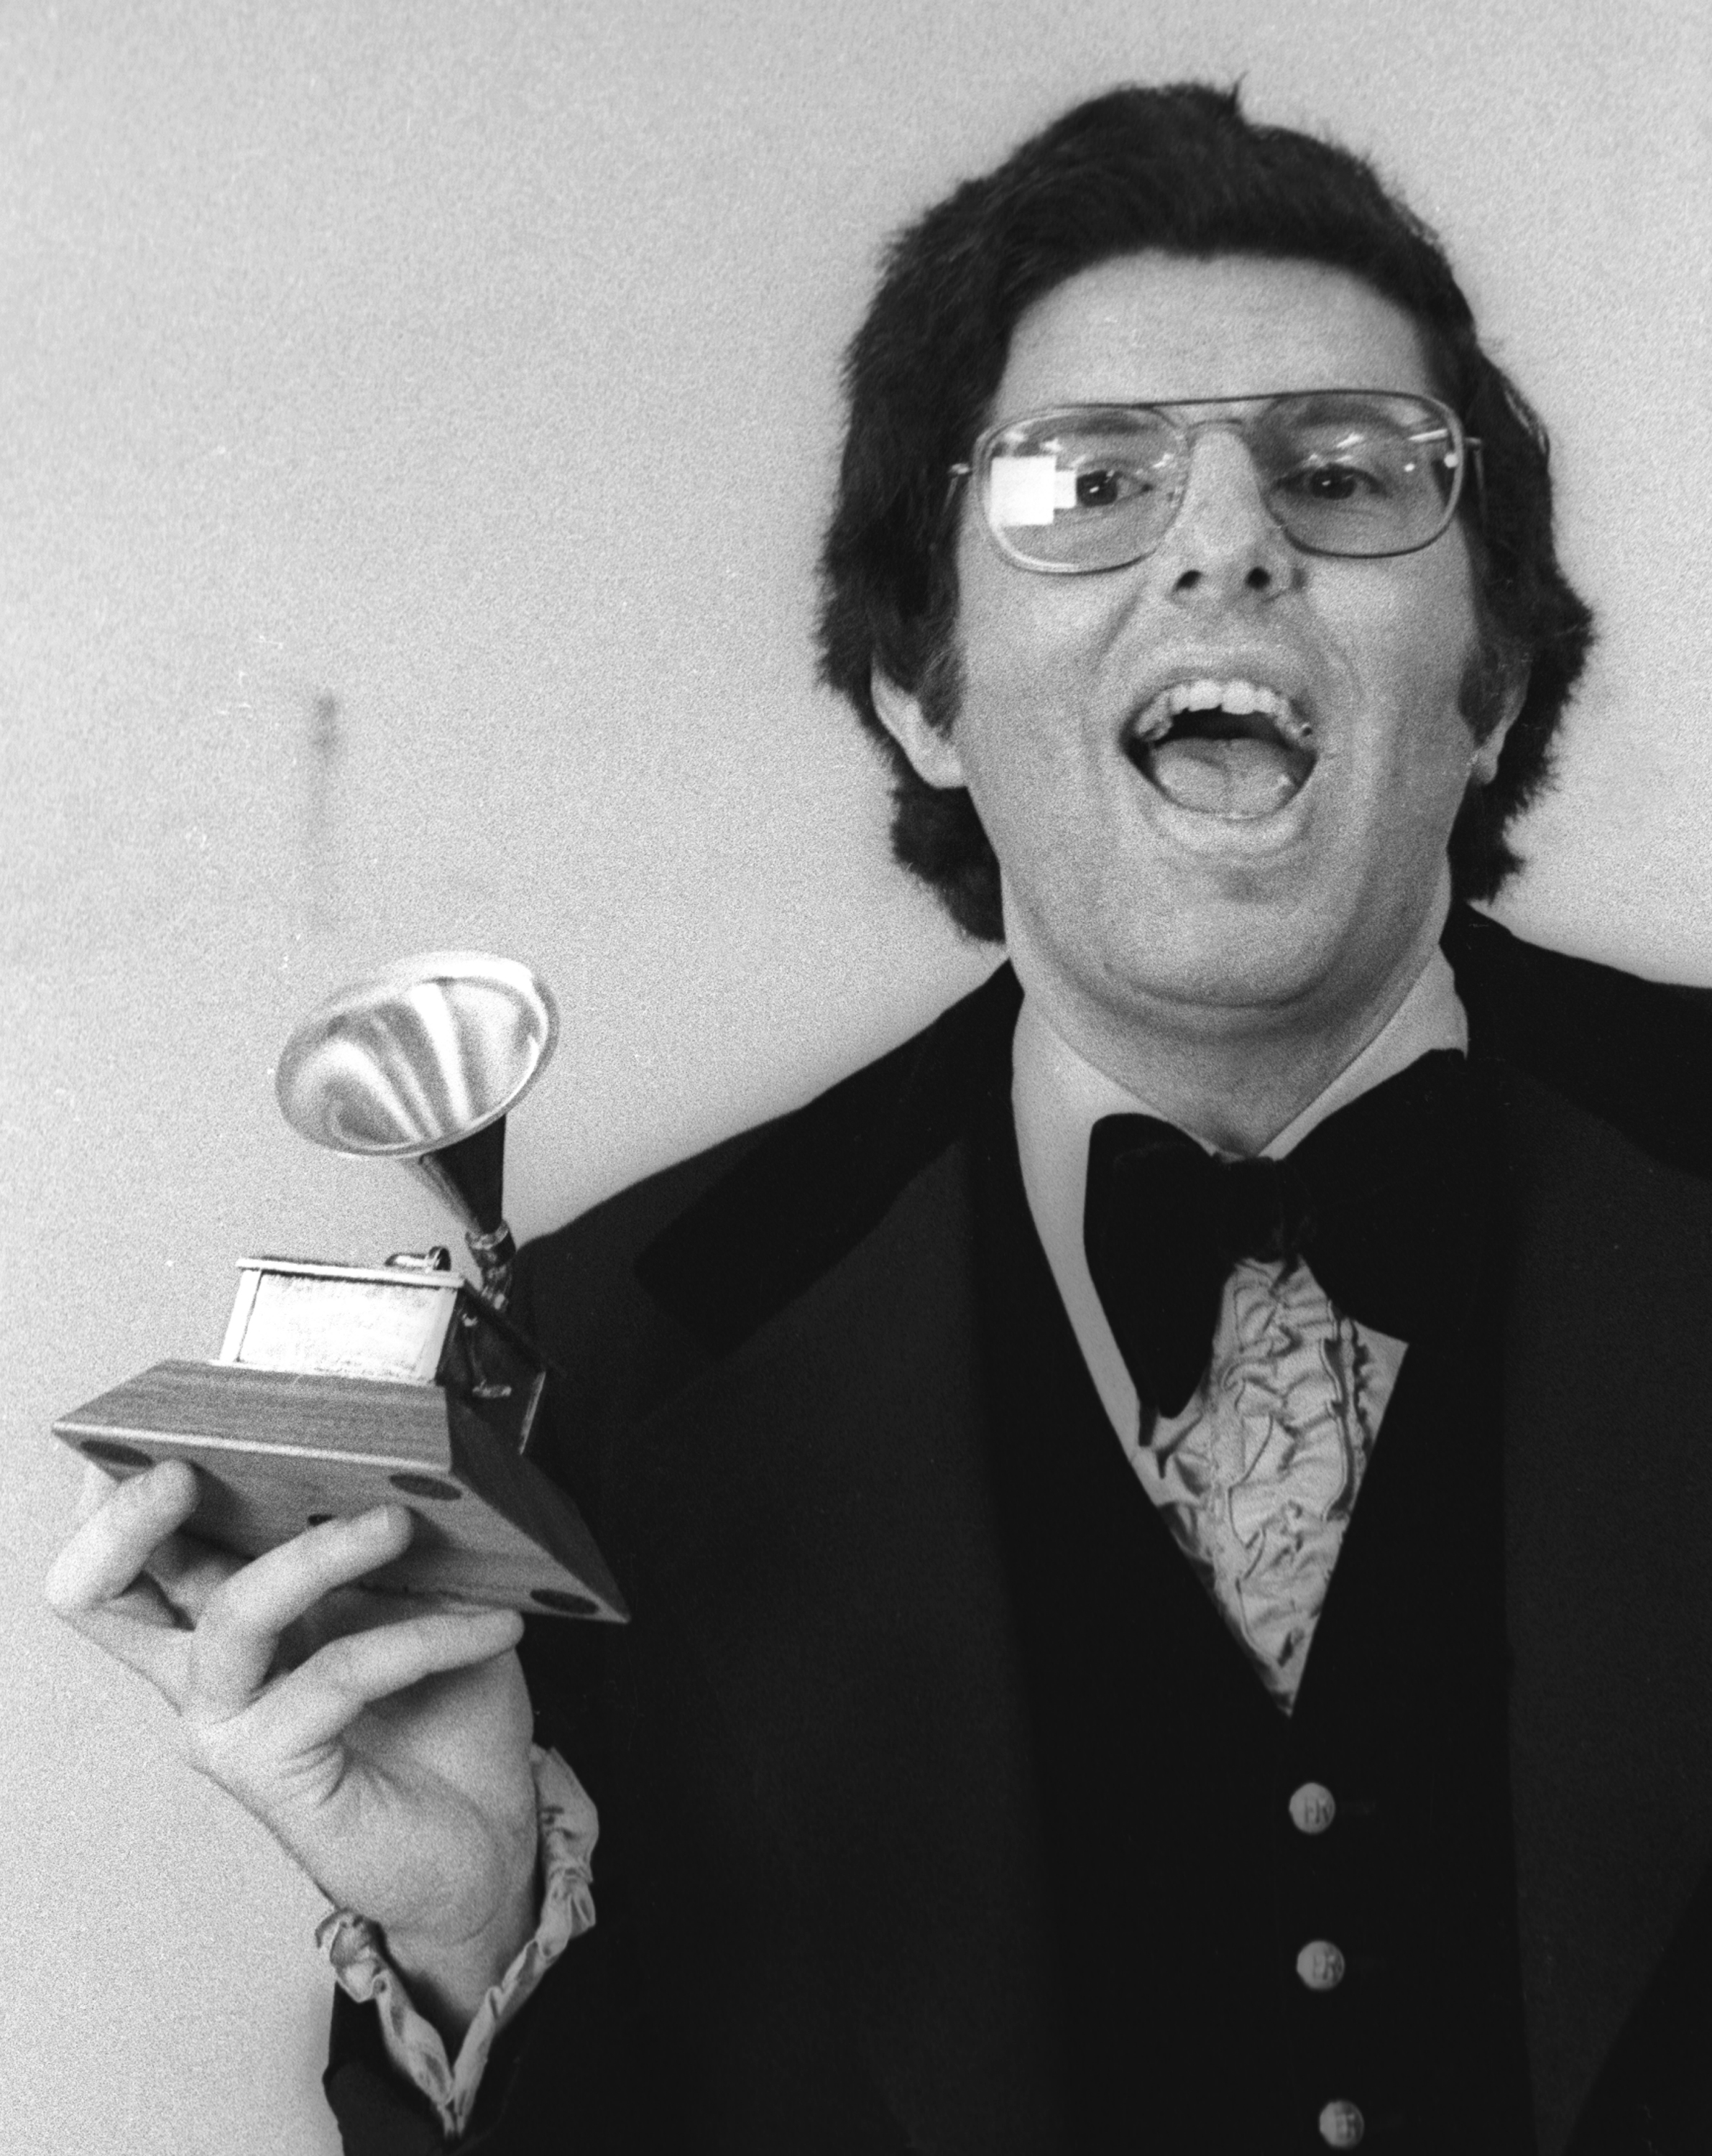 Marvin Hamlisch with his Grammy